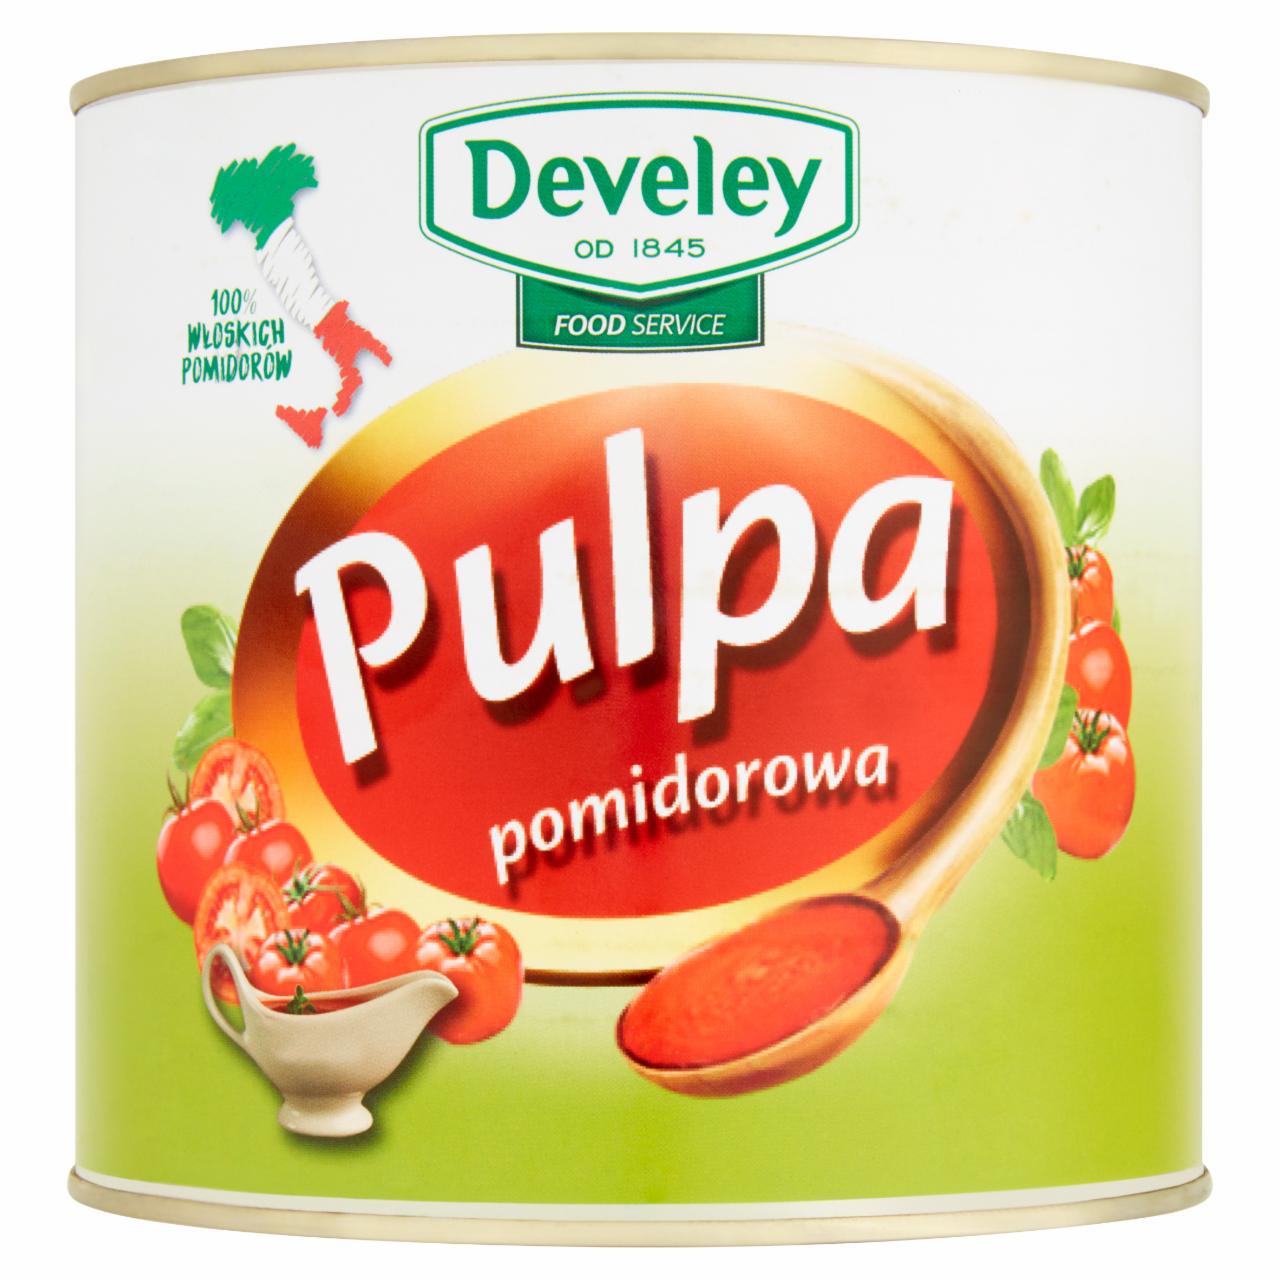 Zdjęcia - Develey Food Service Pulpa pomidorowa 2,5 kg